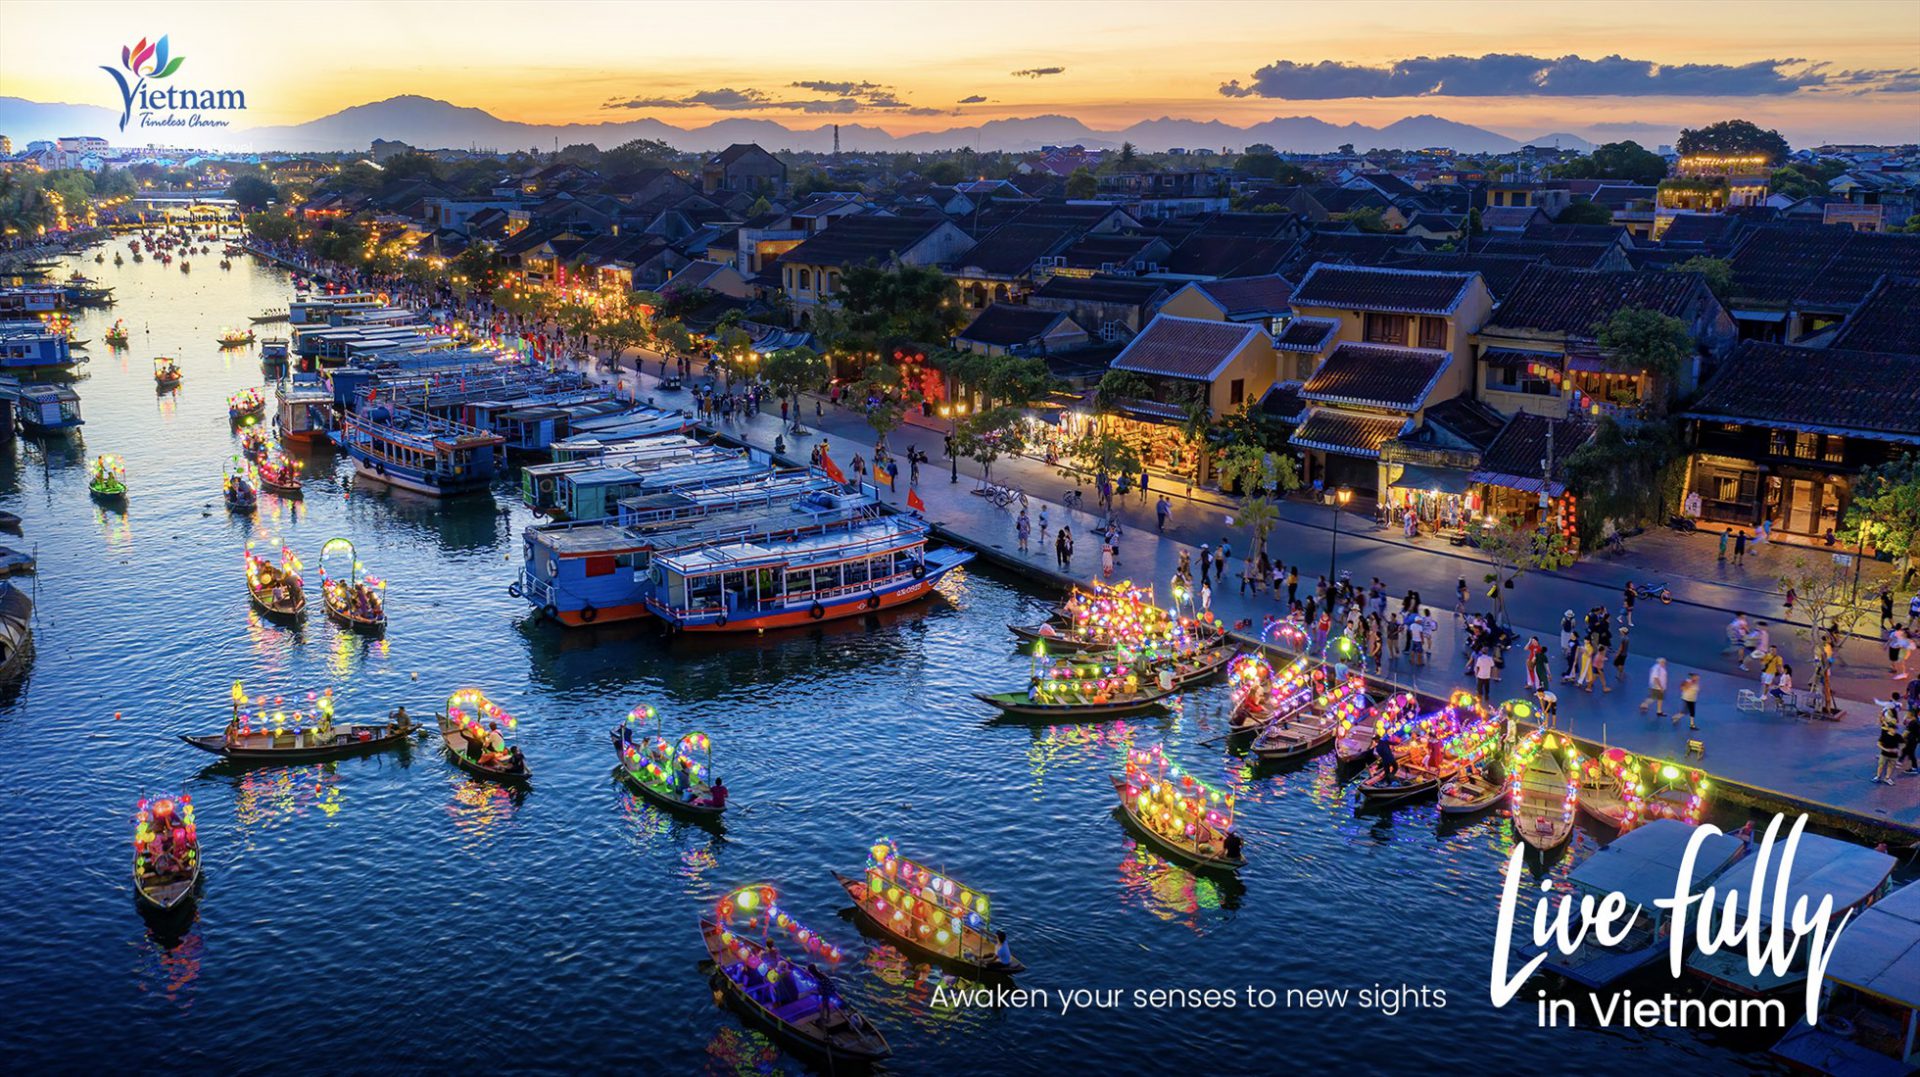 Chuyên trang “Live Fully in Vietnam” dành cho khách quốc tế là một trong những nền tảng số hóa thông tin trên website quảng bá du lịch Việt Nam. Ảnh: TITC